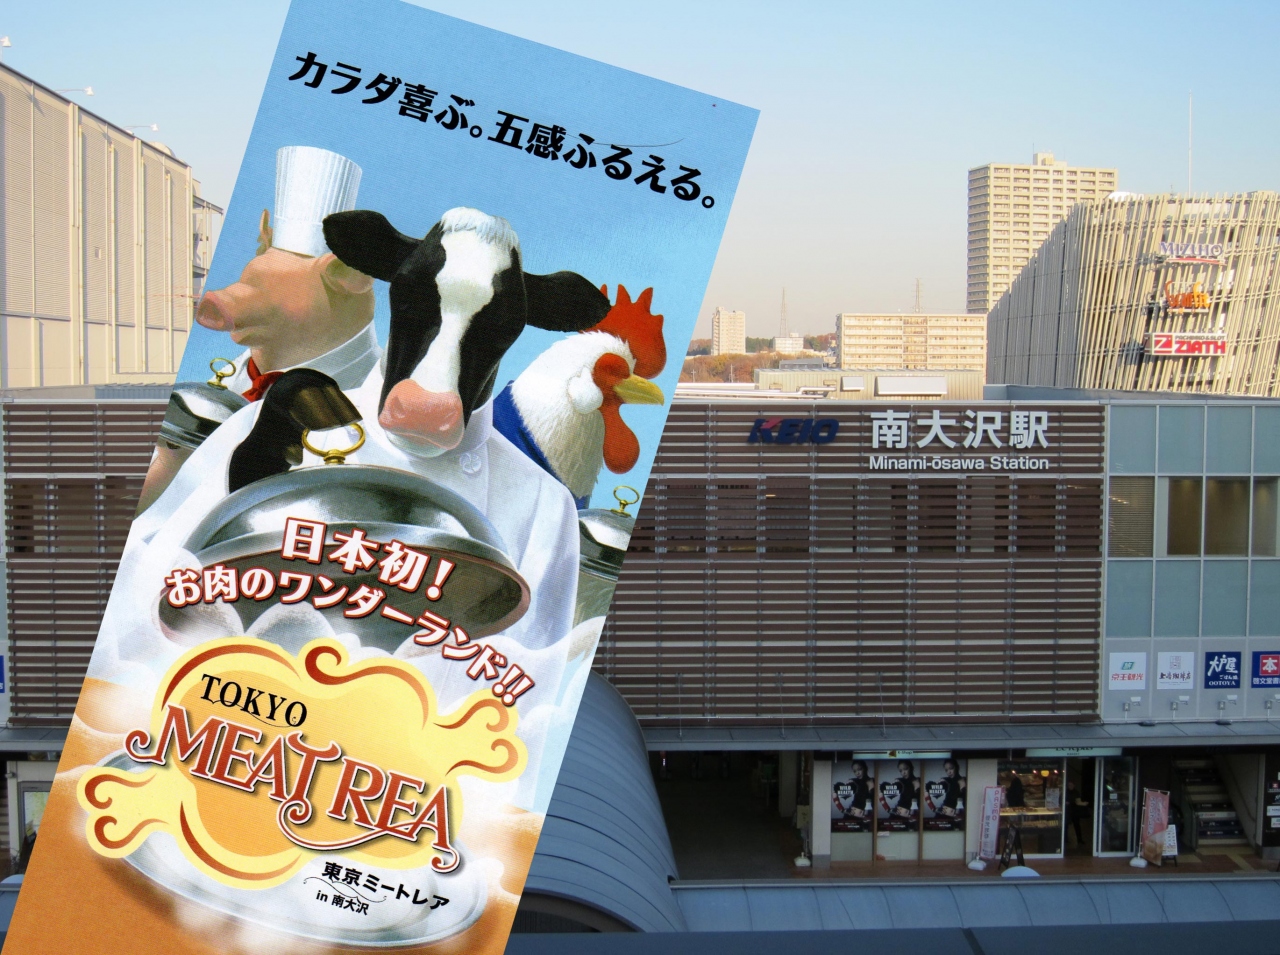 話題の 東京ミートレア へ行ってみました 高尾 八王子 東京 の旅行記 ブログ By Shinchanmama93さん フォートラベル